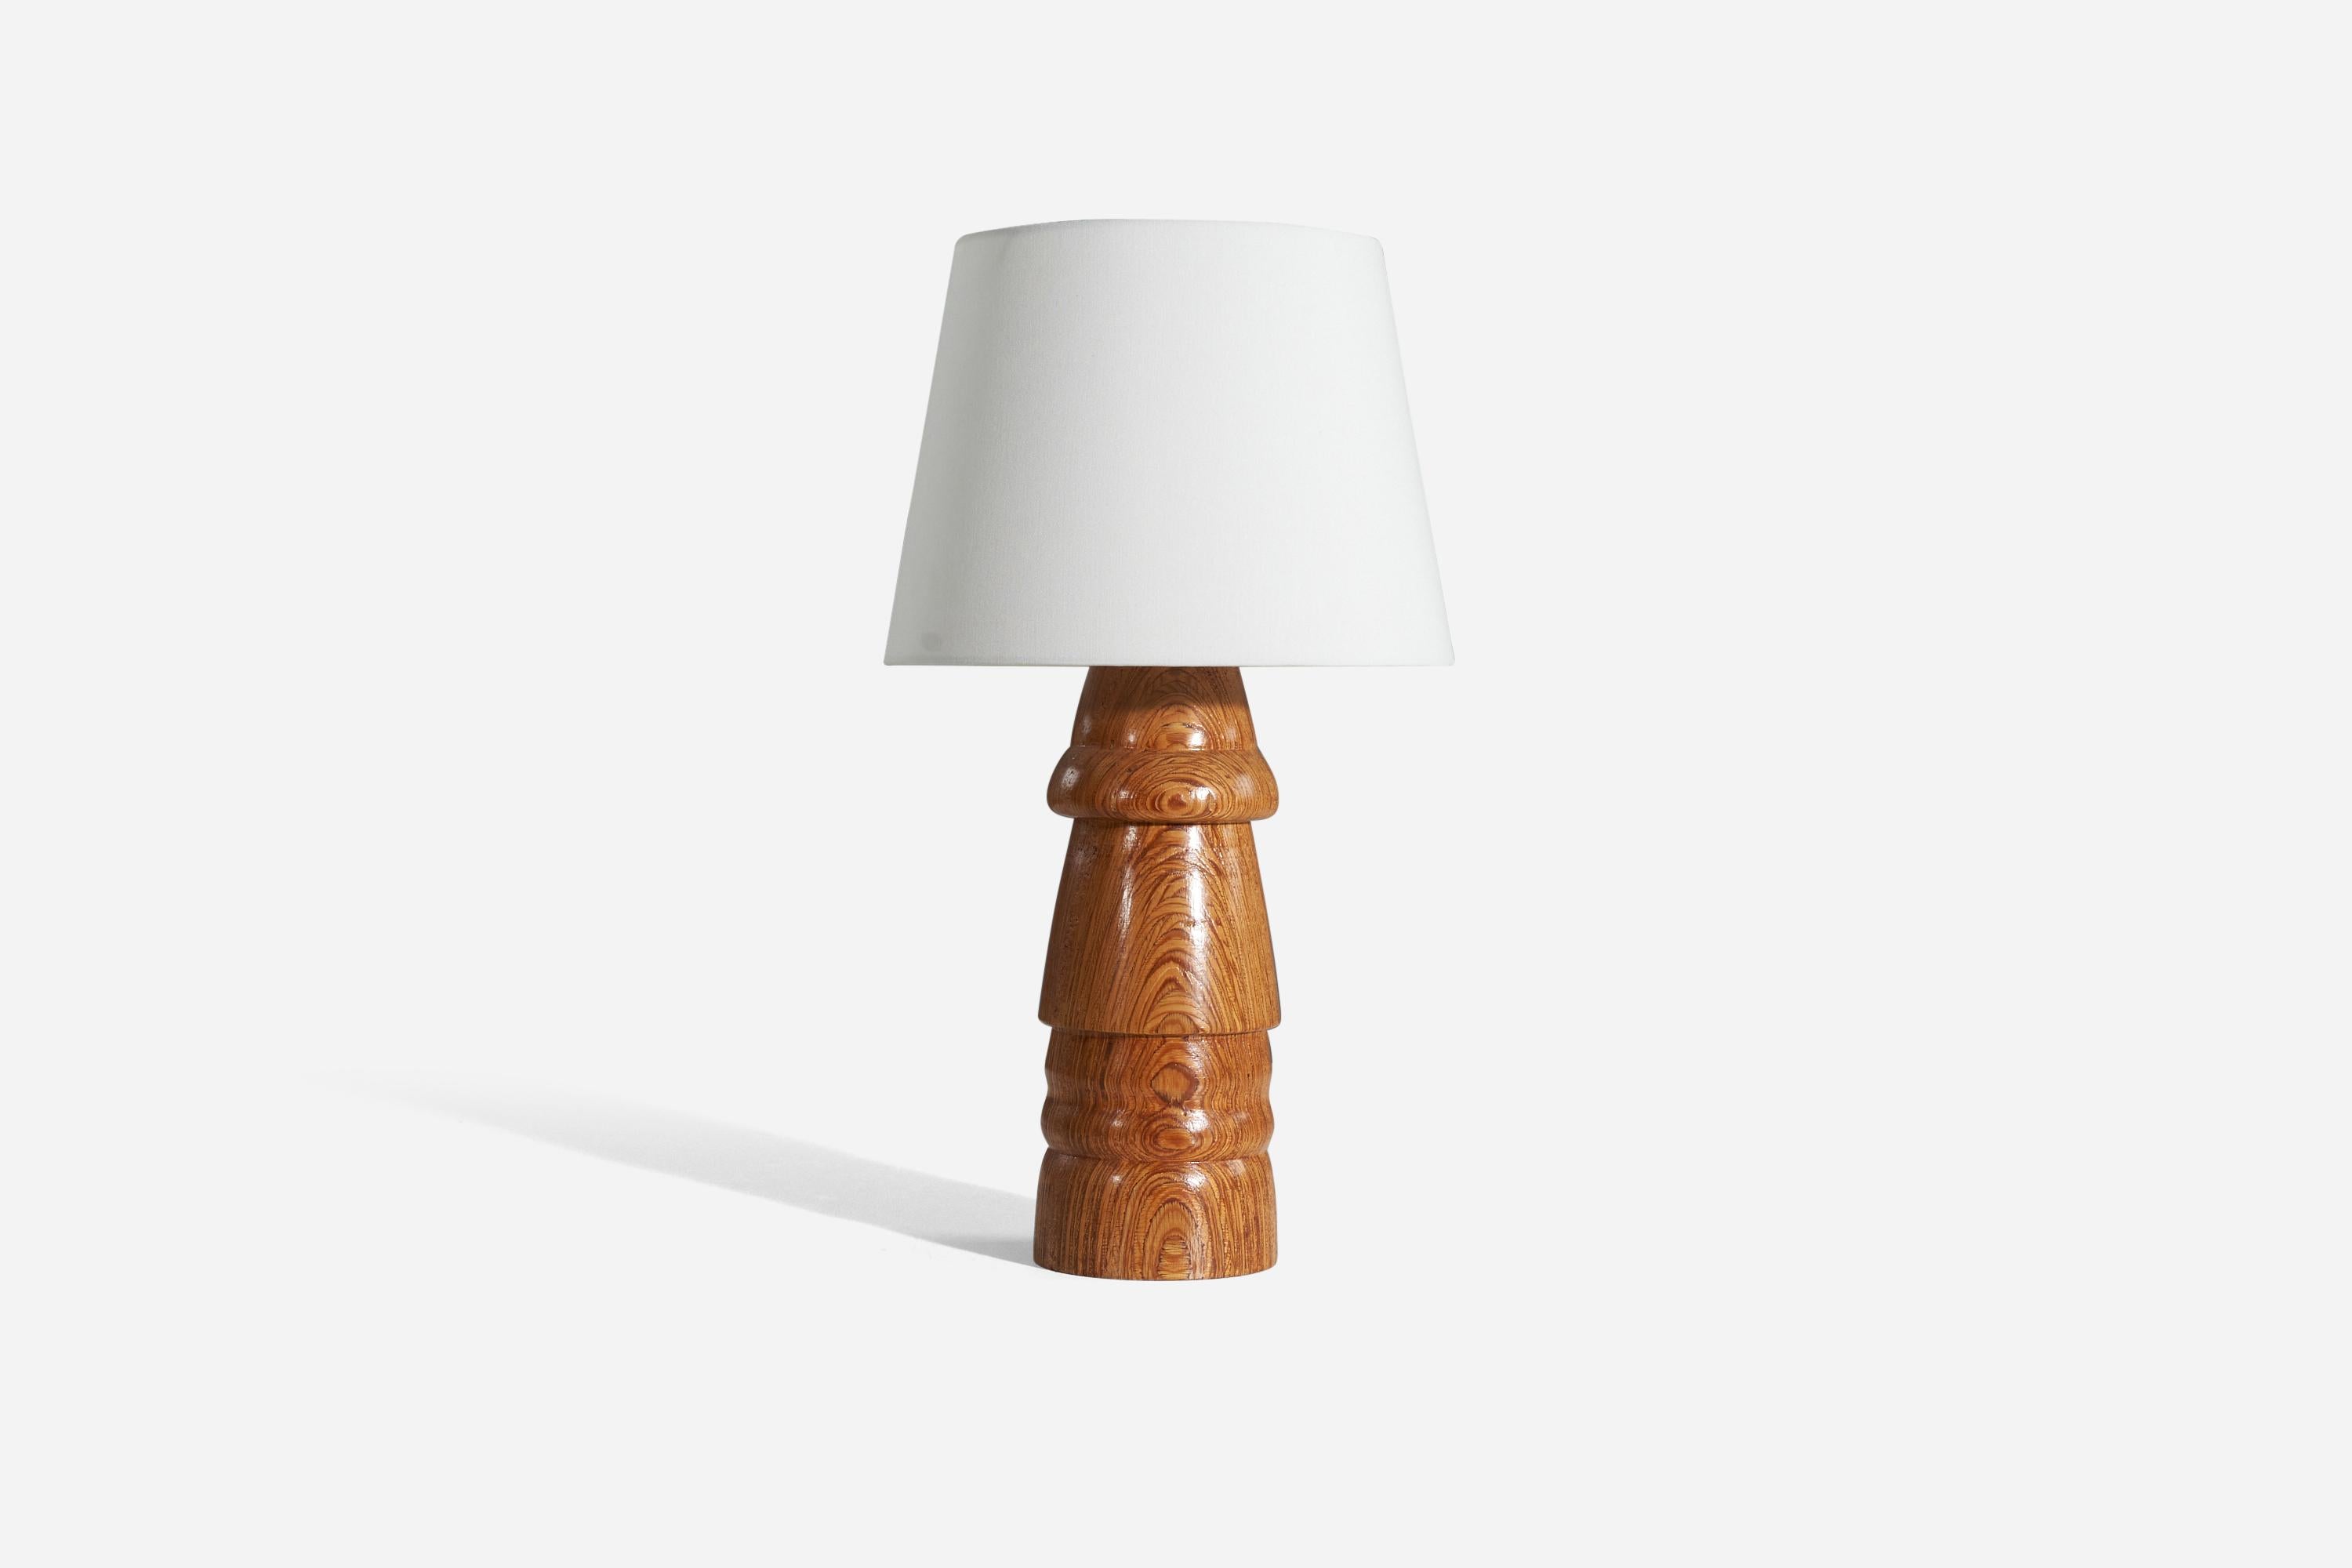 Lampe de table en bois de pin stratifié empilé, conçue et produite par un designer suédois, Suède, années 1970.

Vendu sans abat-jour. 
Dimensions de la lampe (pouces) : 17.5 x 5 x 5 (H x L x P)
Dimensions de l'abat-jour (pouces) : 9 x 12 x 9 (T x B